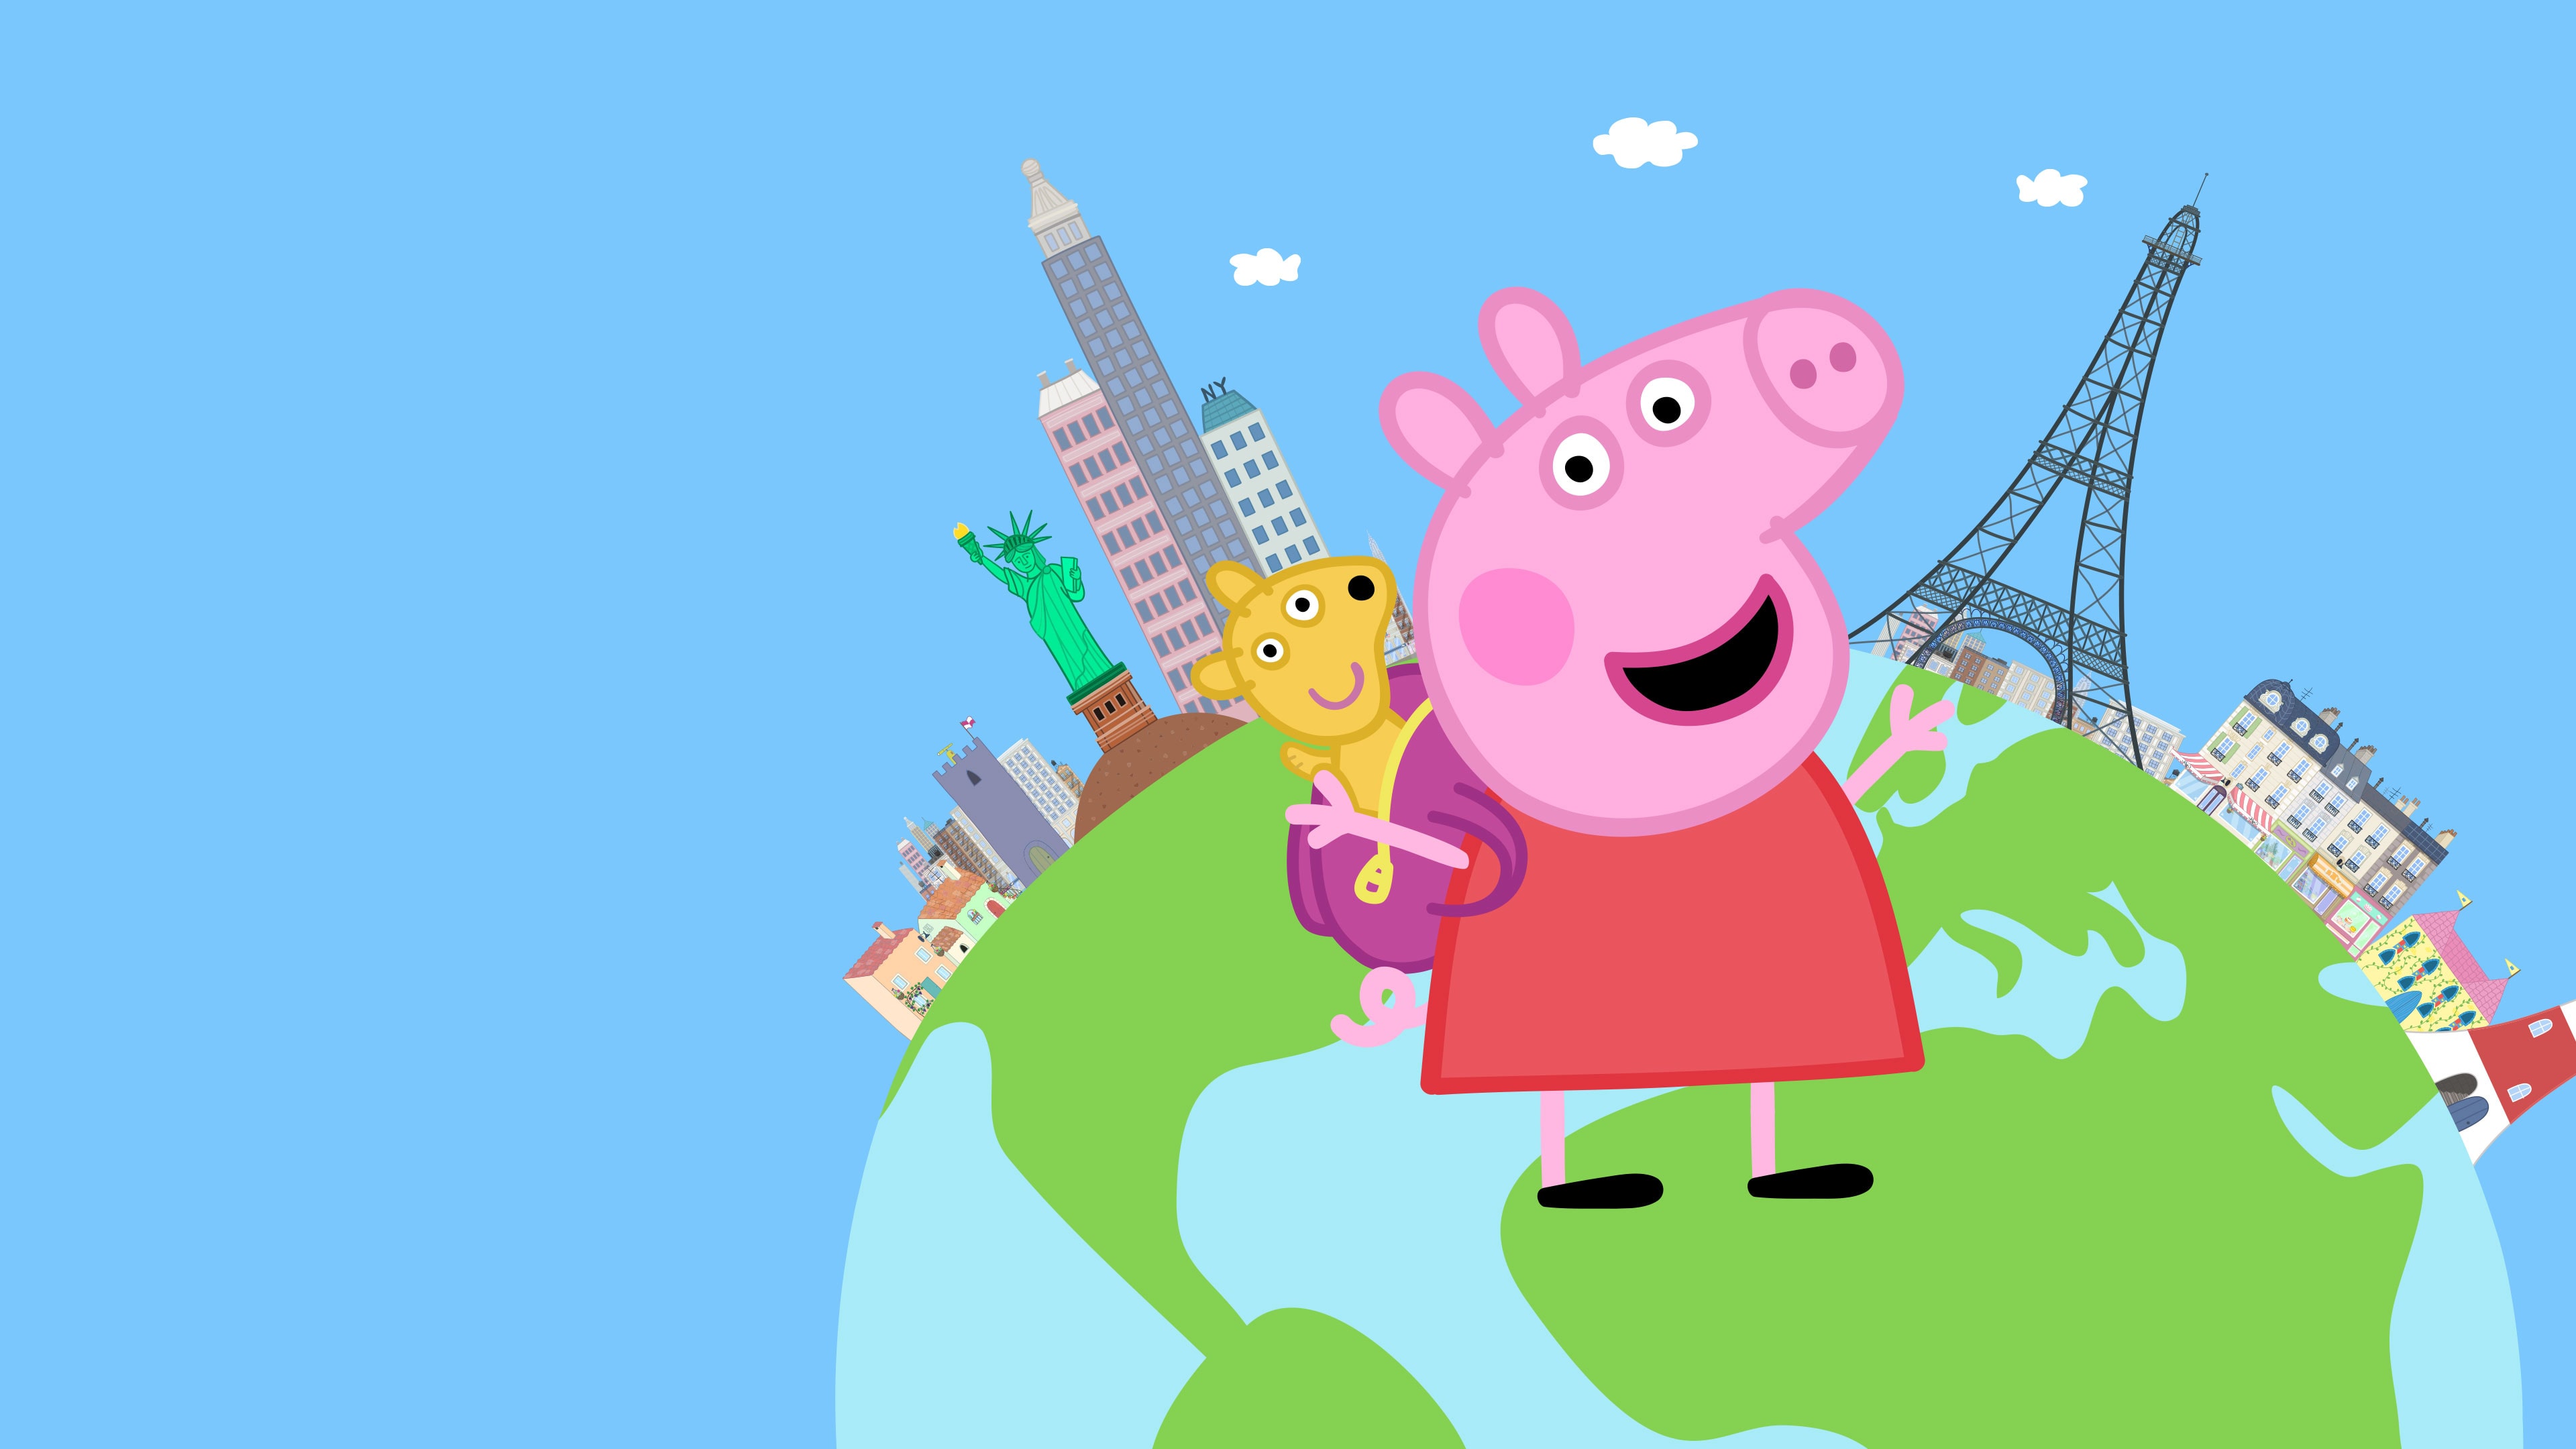 World　Pig:　Peppa　Adventures